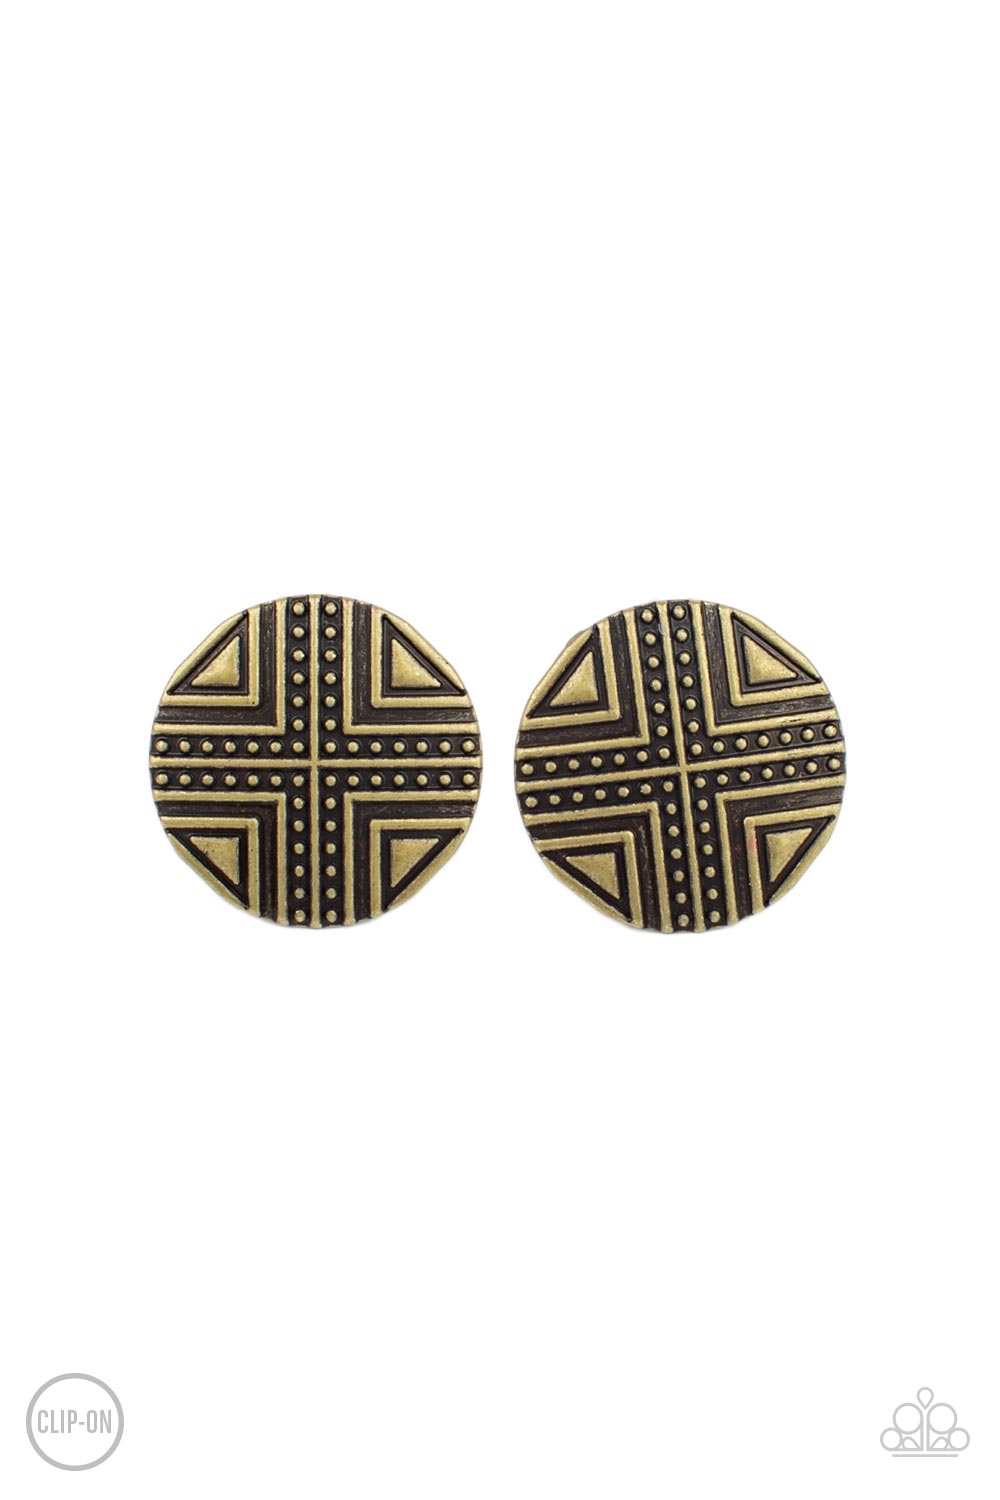 Shielded Shimmer - Brass Clip-On Earring freeshipping - JewLz4u Gemstone Gallery